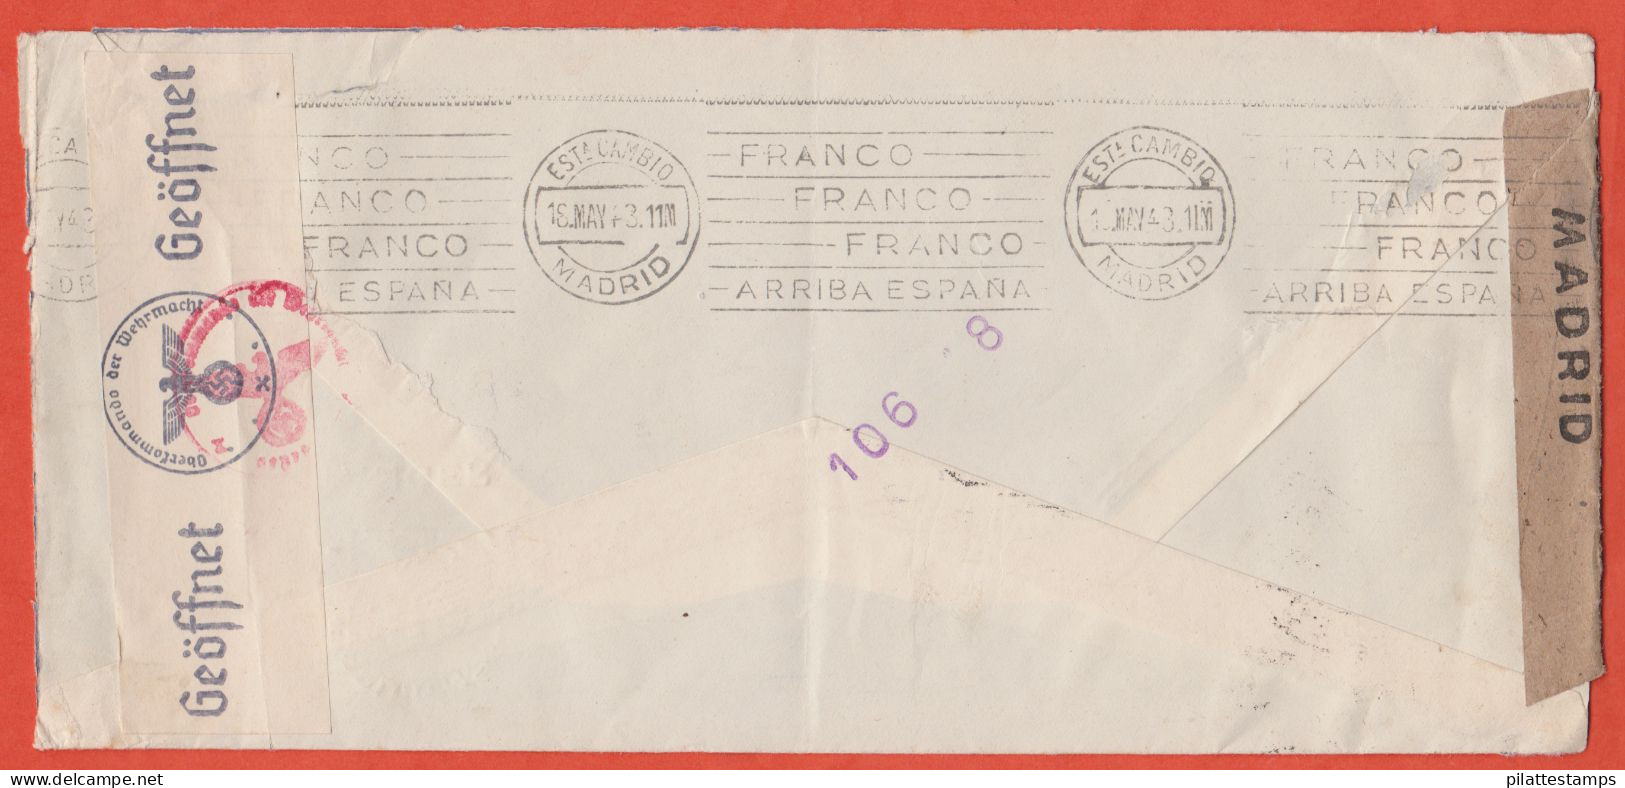 MAROC ESPAGNOL LETTRE CENSUREE DE 1943 DE TANGER POUR BALE SUISSE - Maroc Espagnol